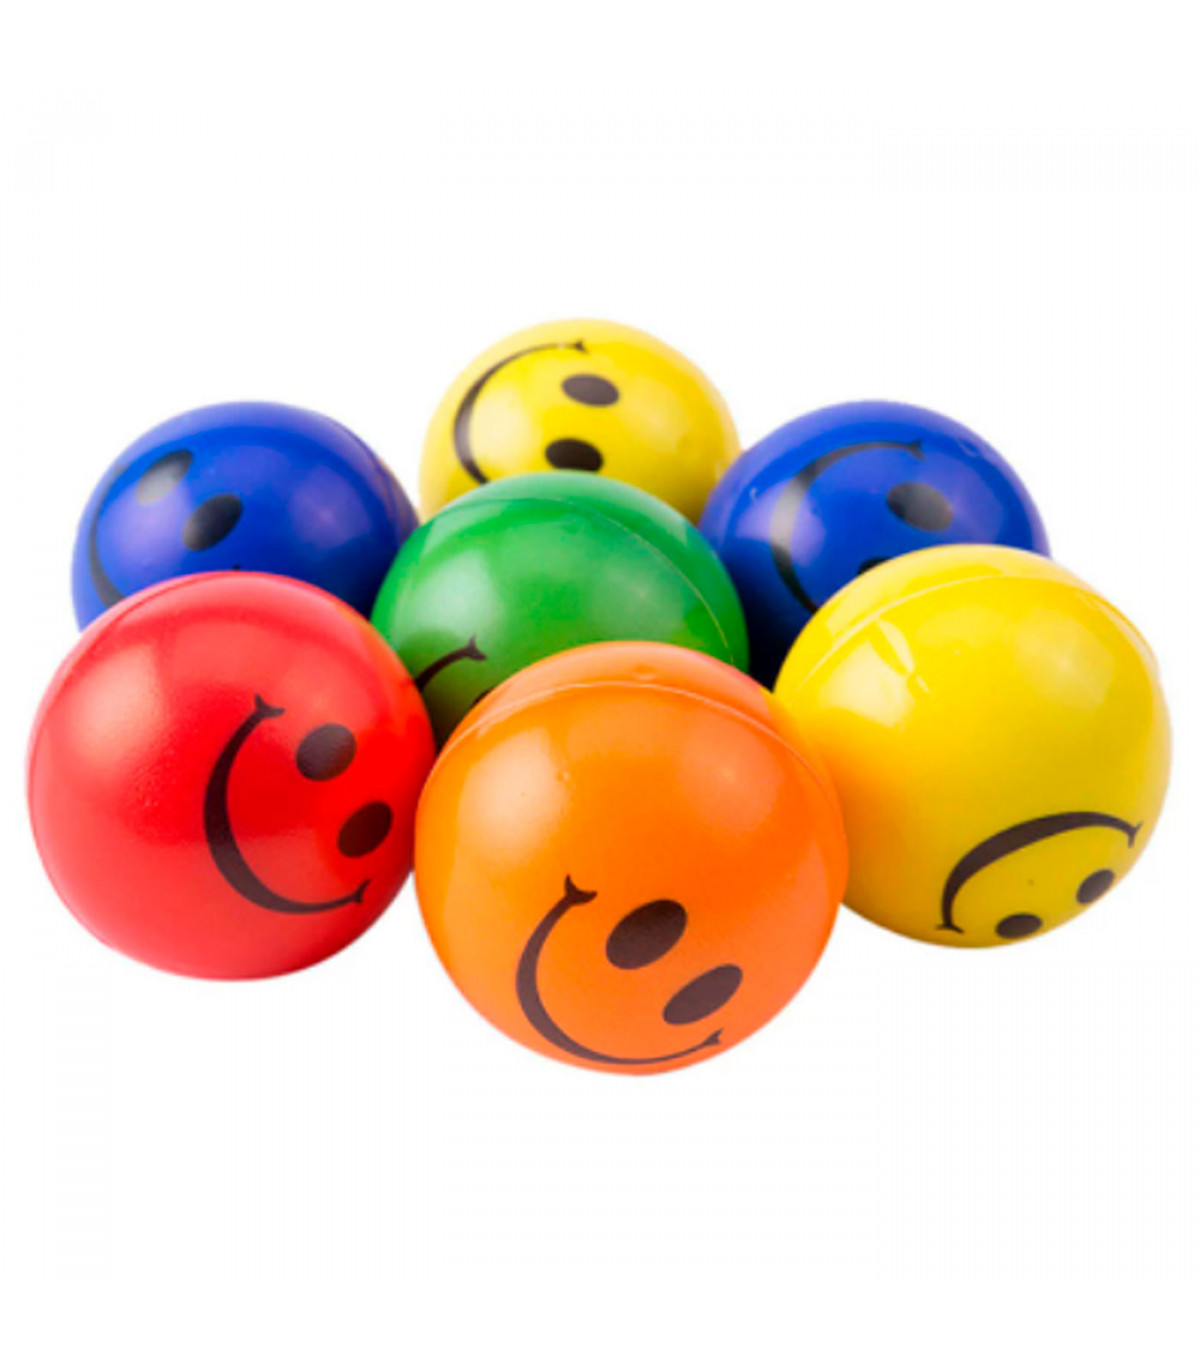 Tradineur - Pelota antiestrés con cara sonriente, poliuretano blando, bola  calmante para aliviar el estrés, regalo original, Ø 6